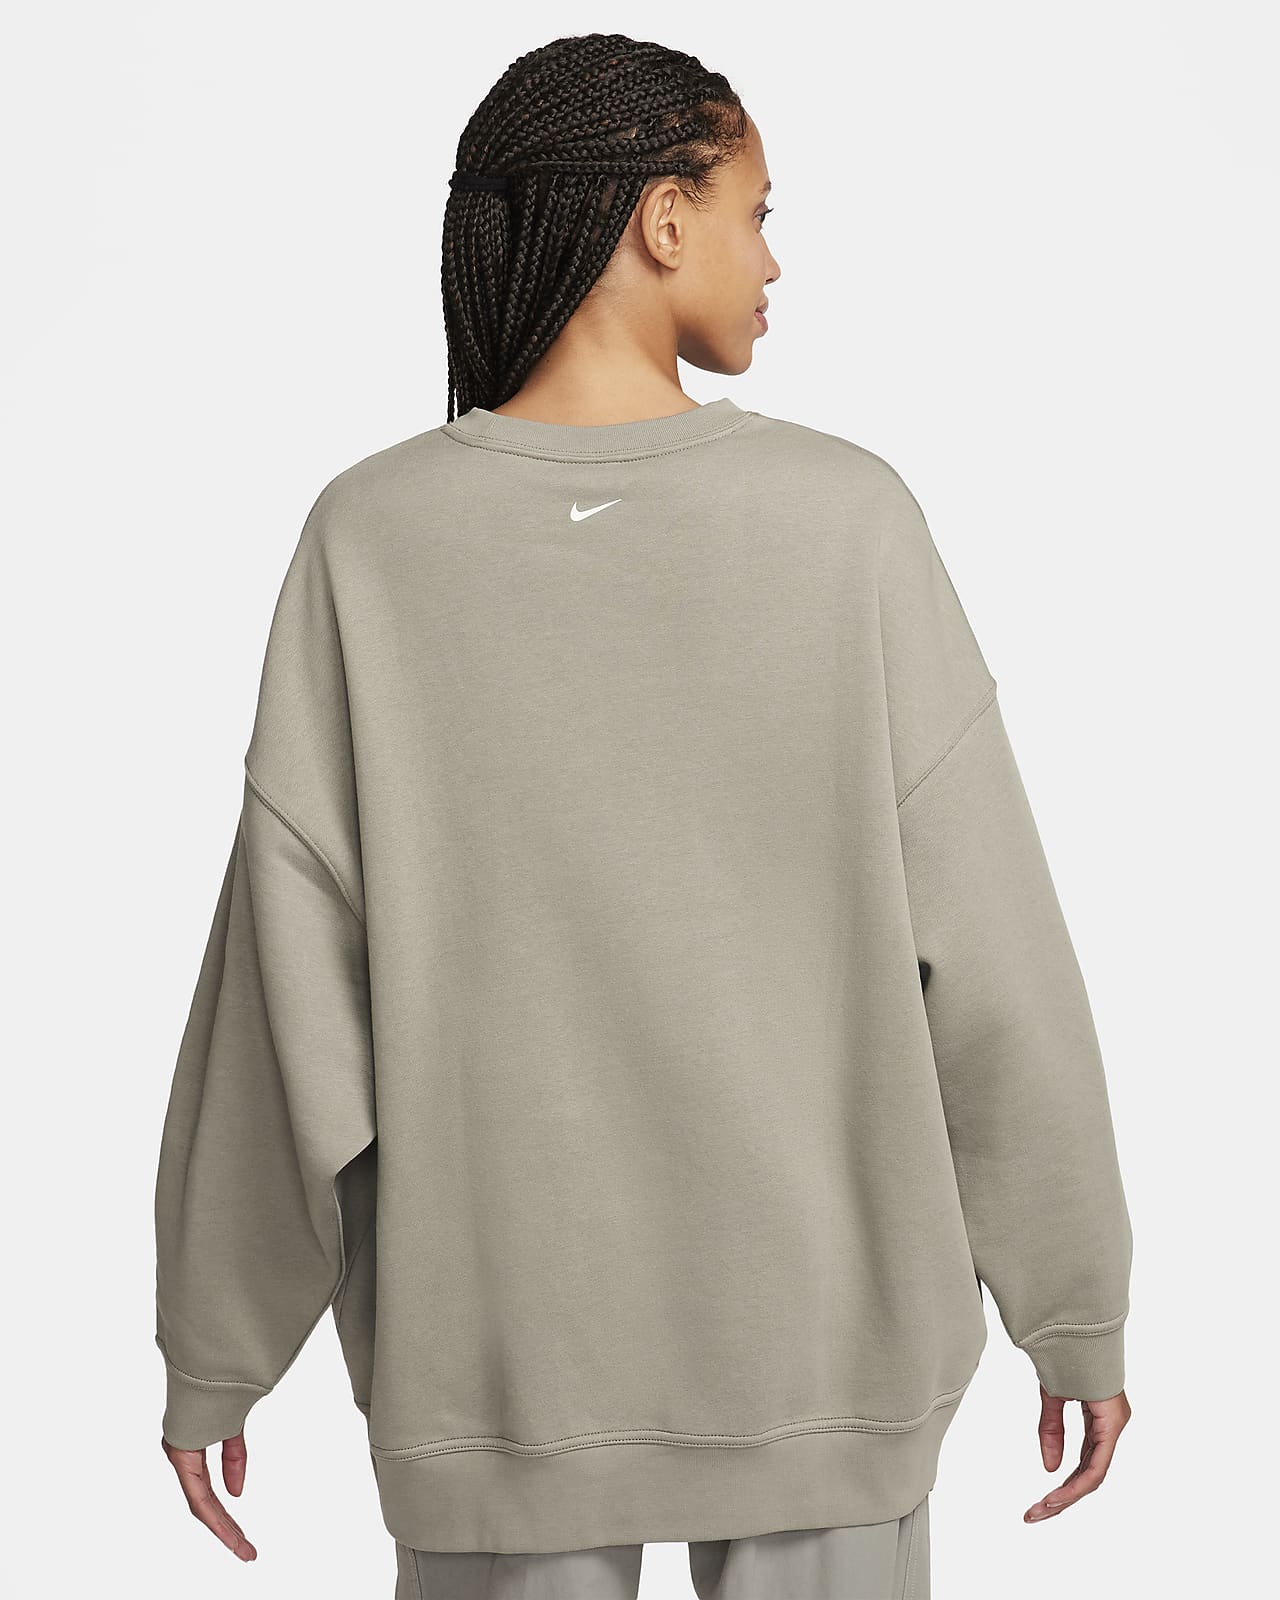 Nike Older Girls Club Fleece Oversized Crew Neck Sweatshirt